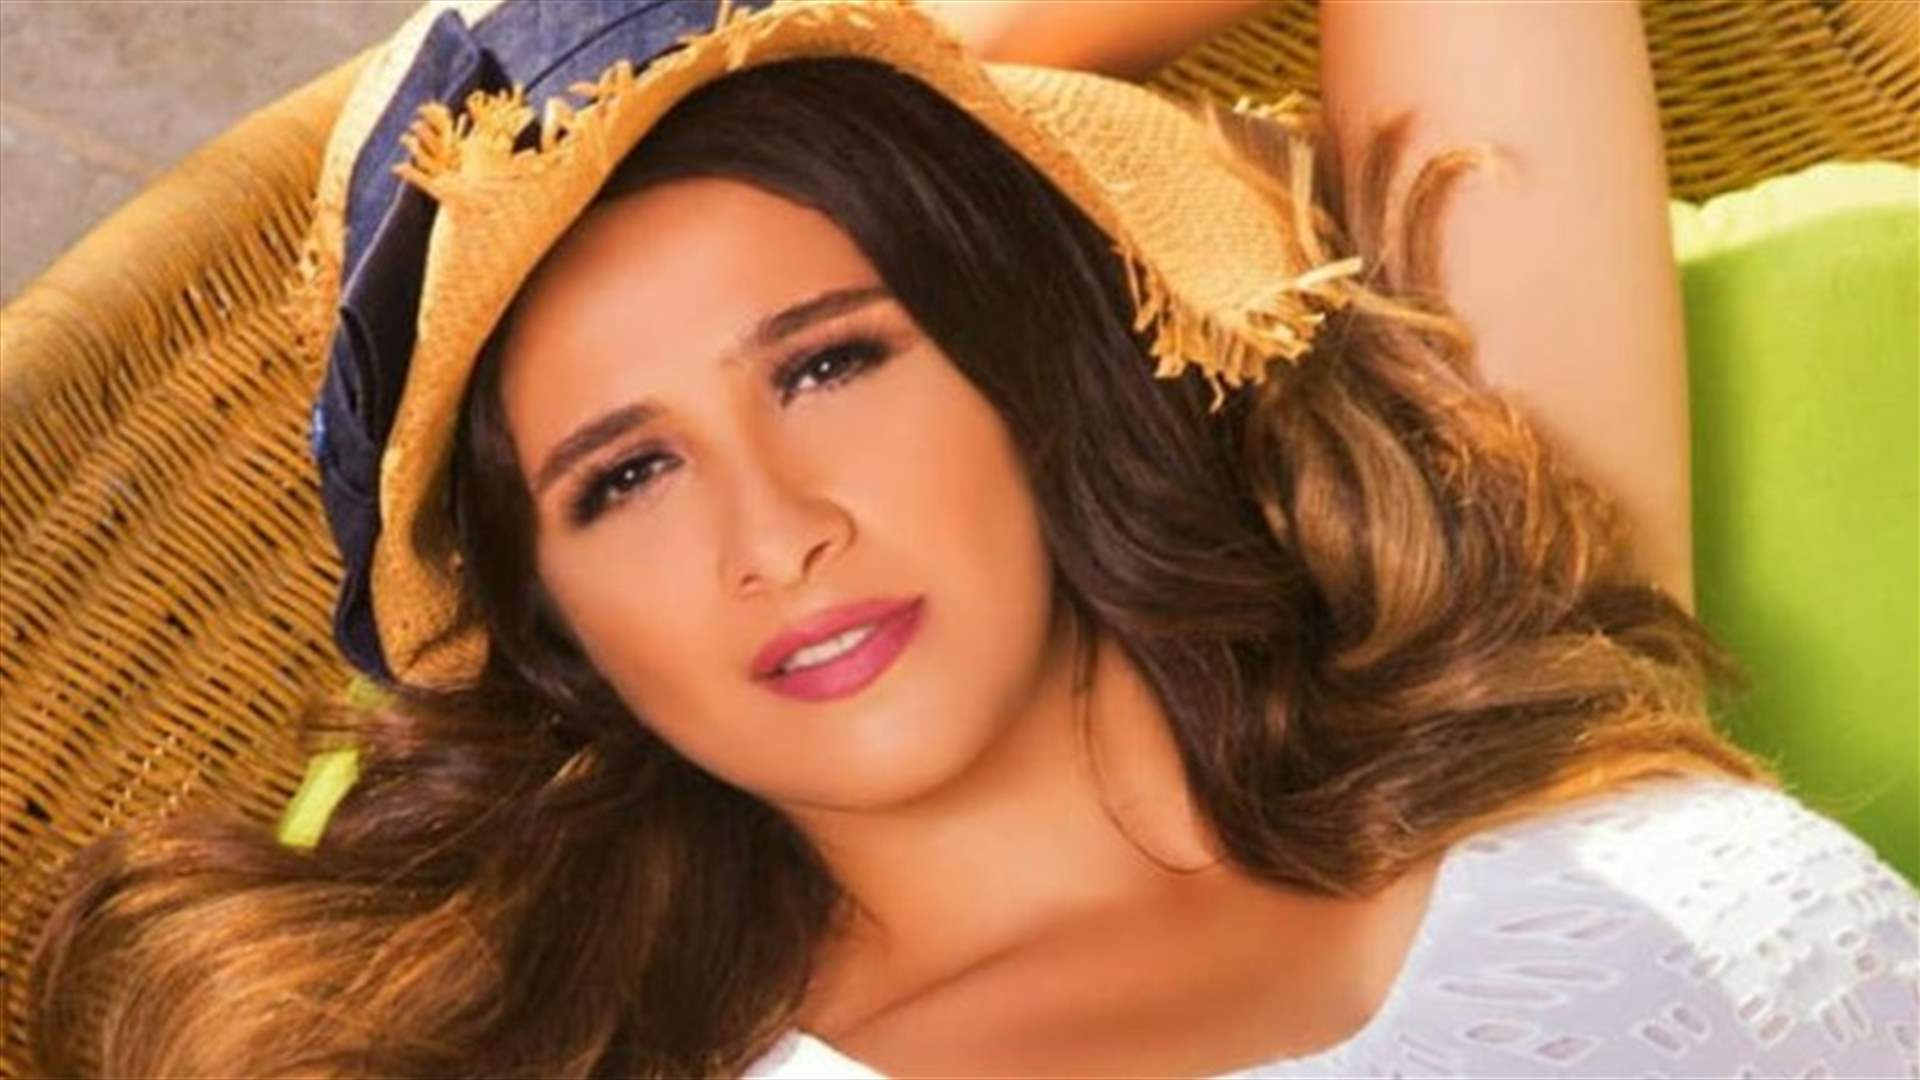 طليق الممثلة ياسمين عبد العزيز يعلن زواجه من فنانة أخرى (صور)